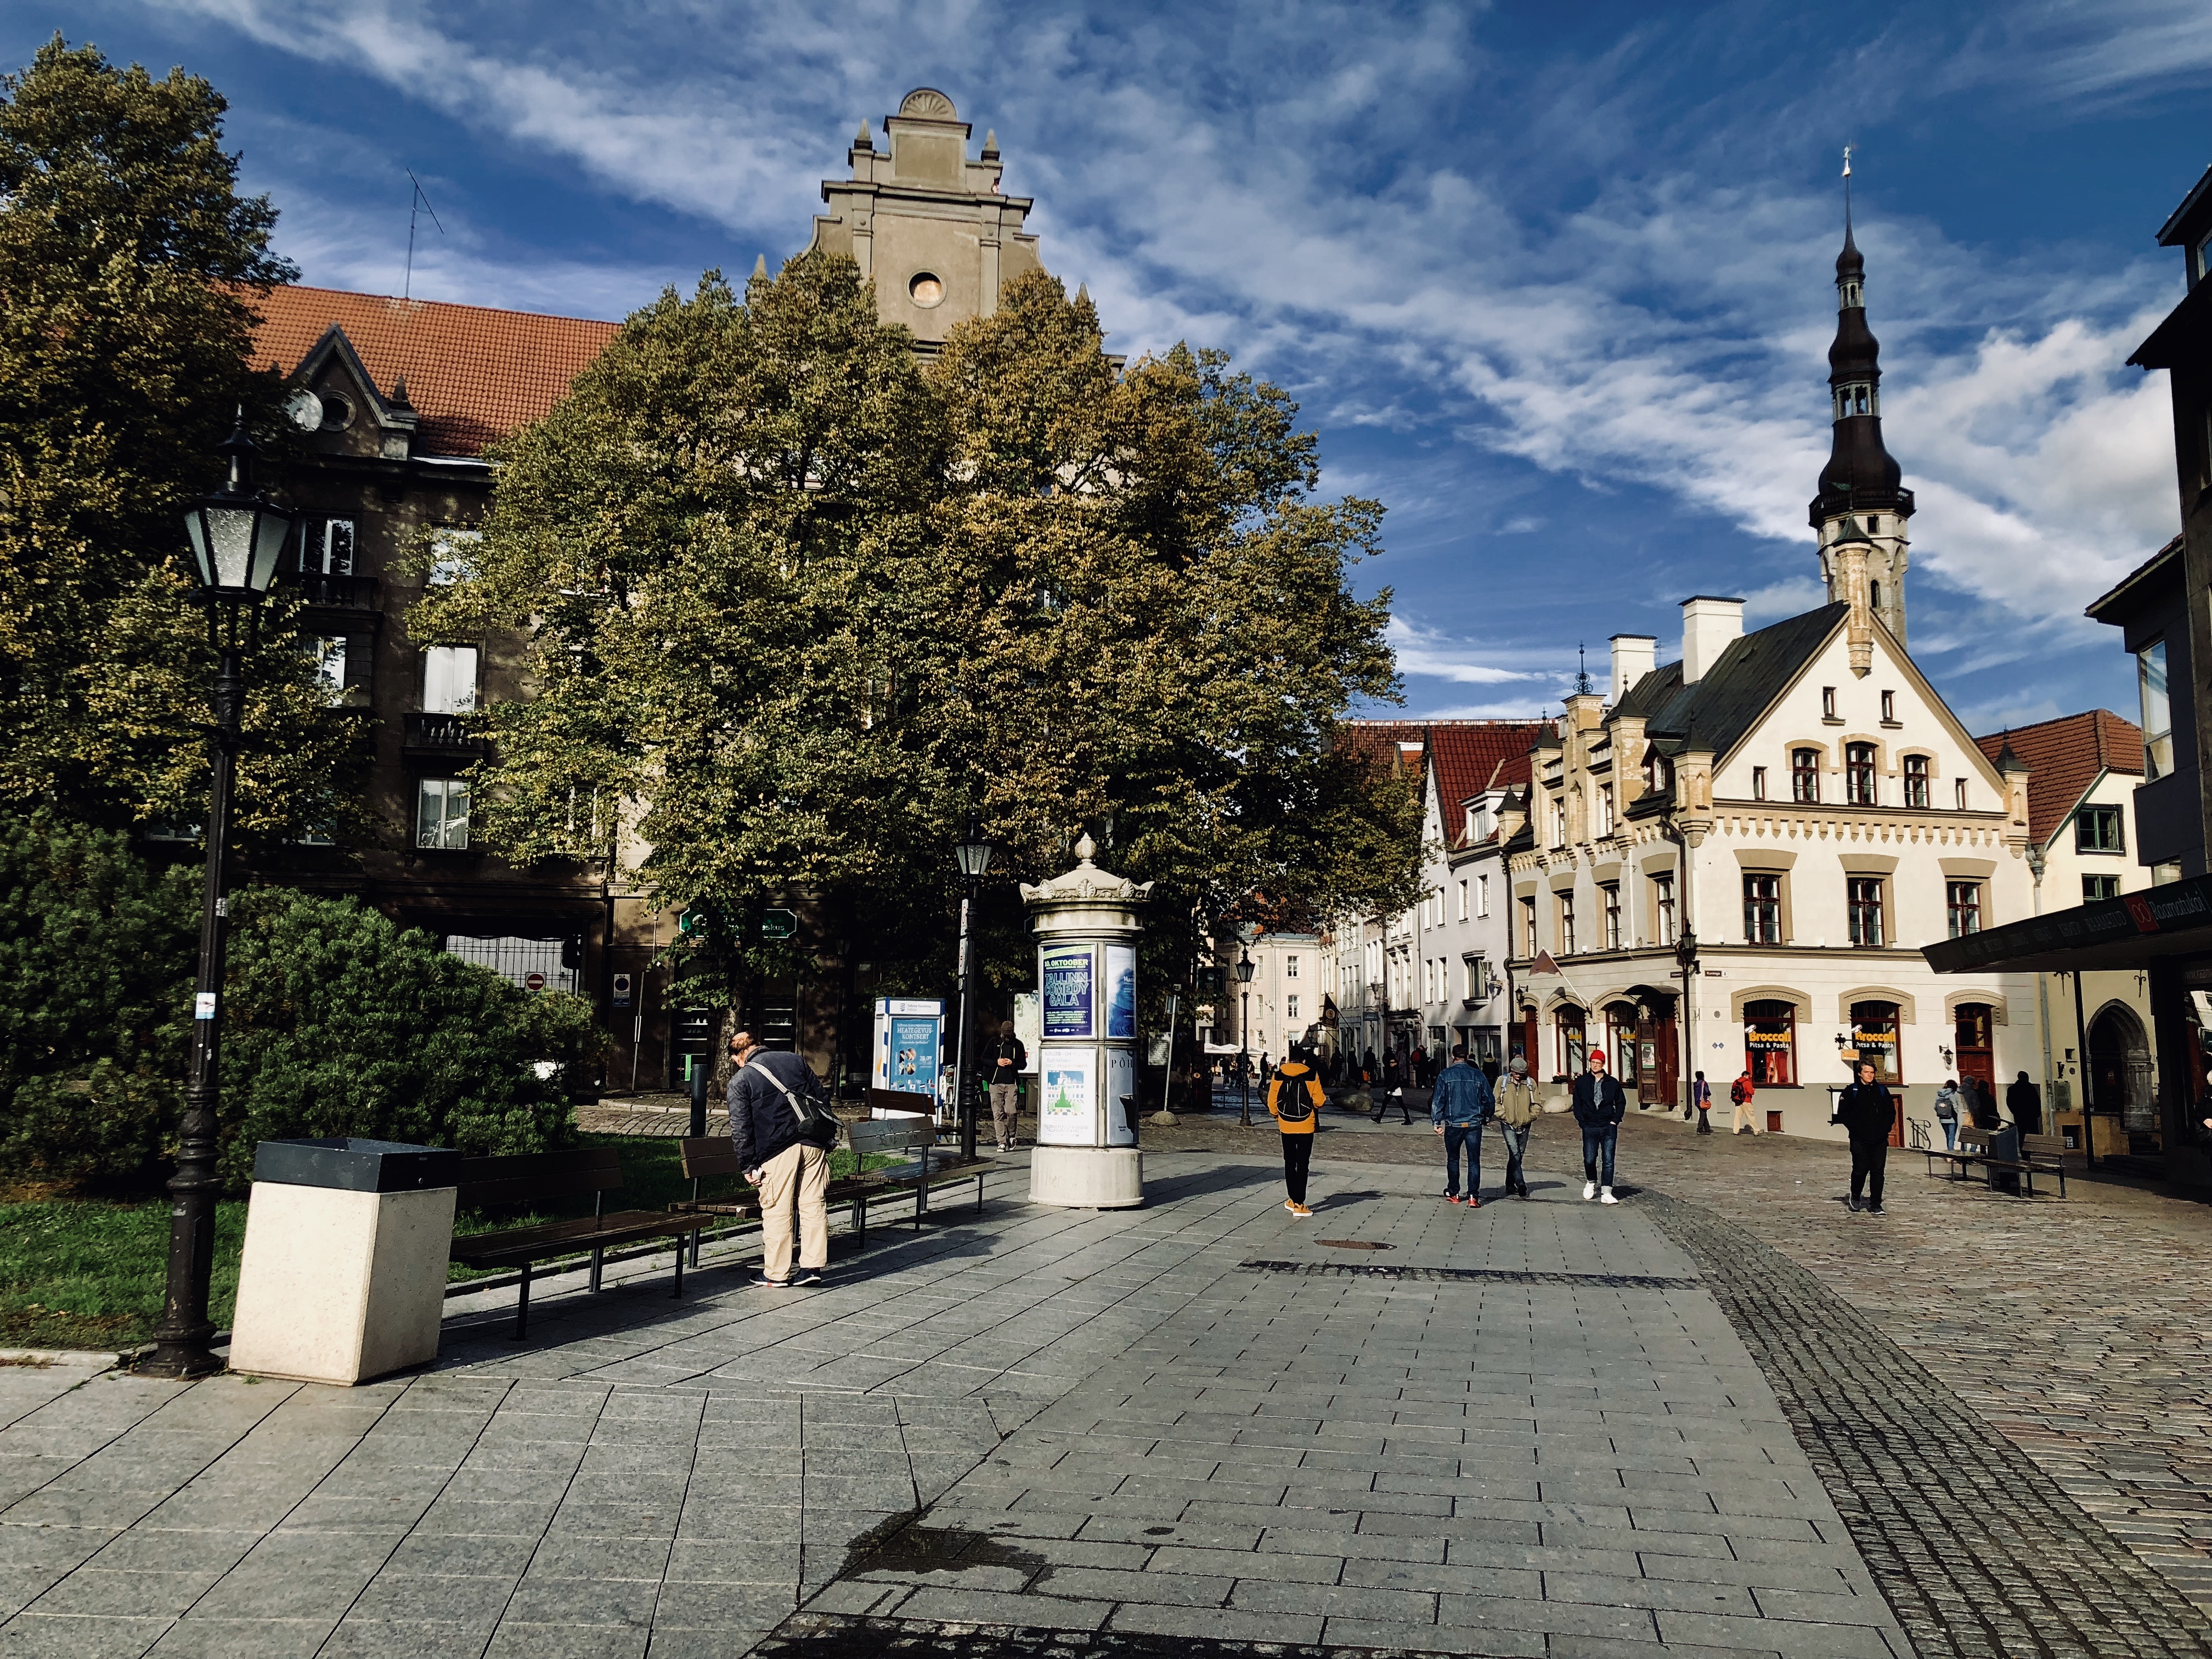 Travel Diary 48 Stunden in Tallinn